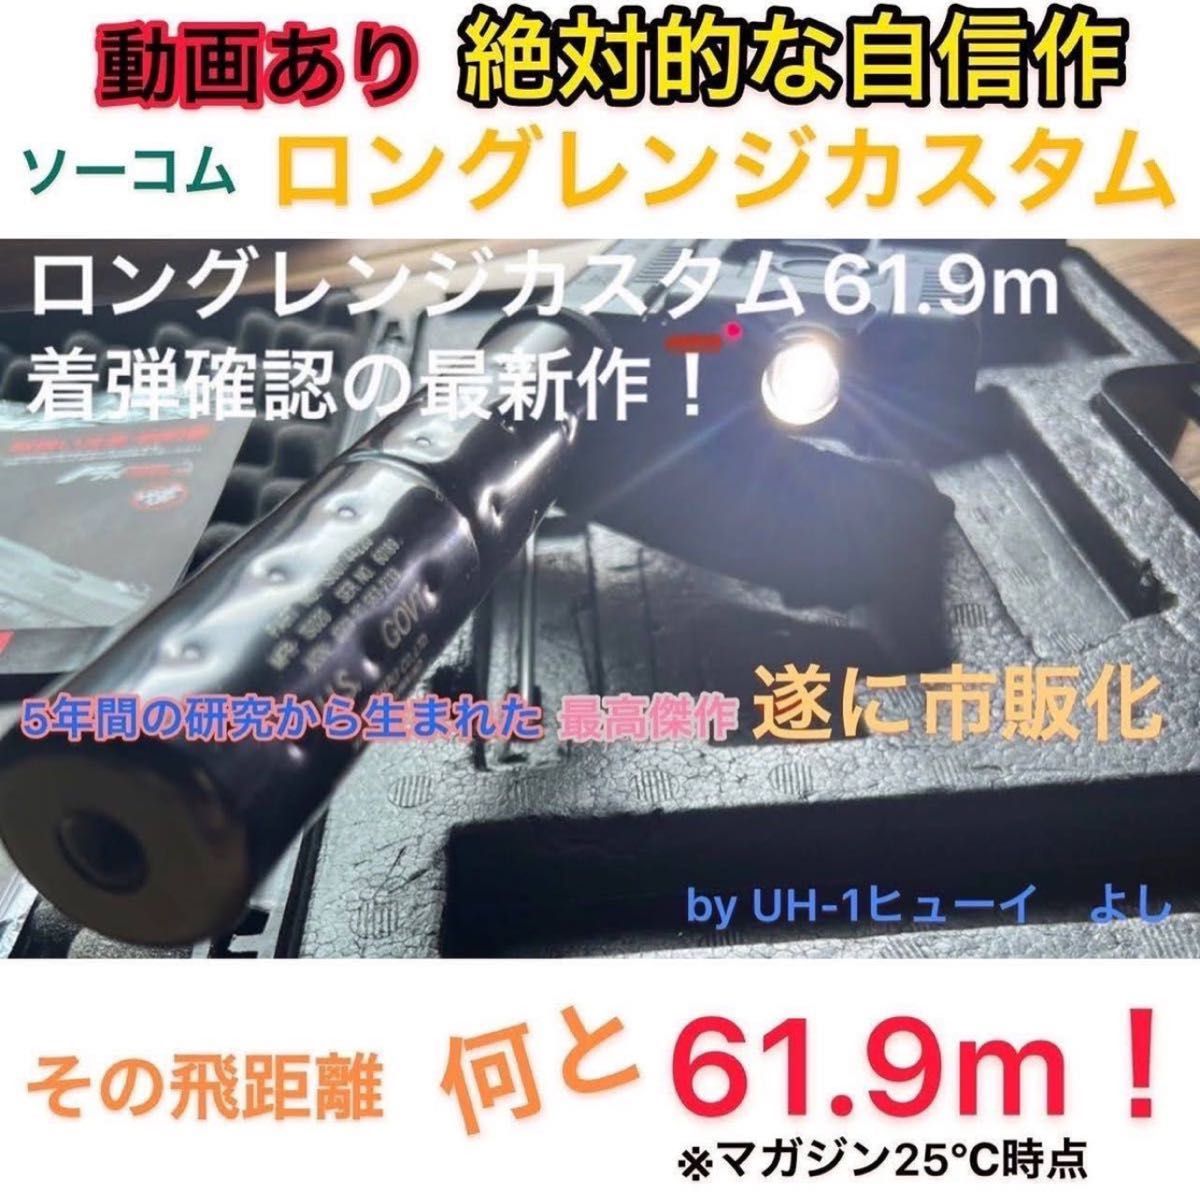 東京マルイソーコムMk23ロングレンジカスタム50mヘッドショット60mオーバー、カスタム名はよーコムです！